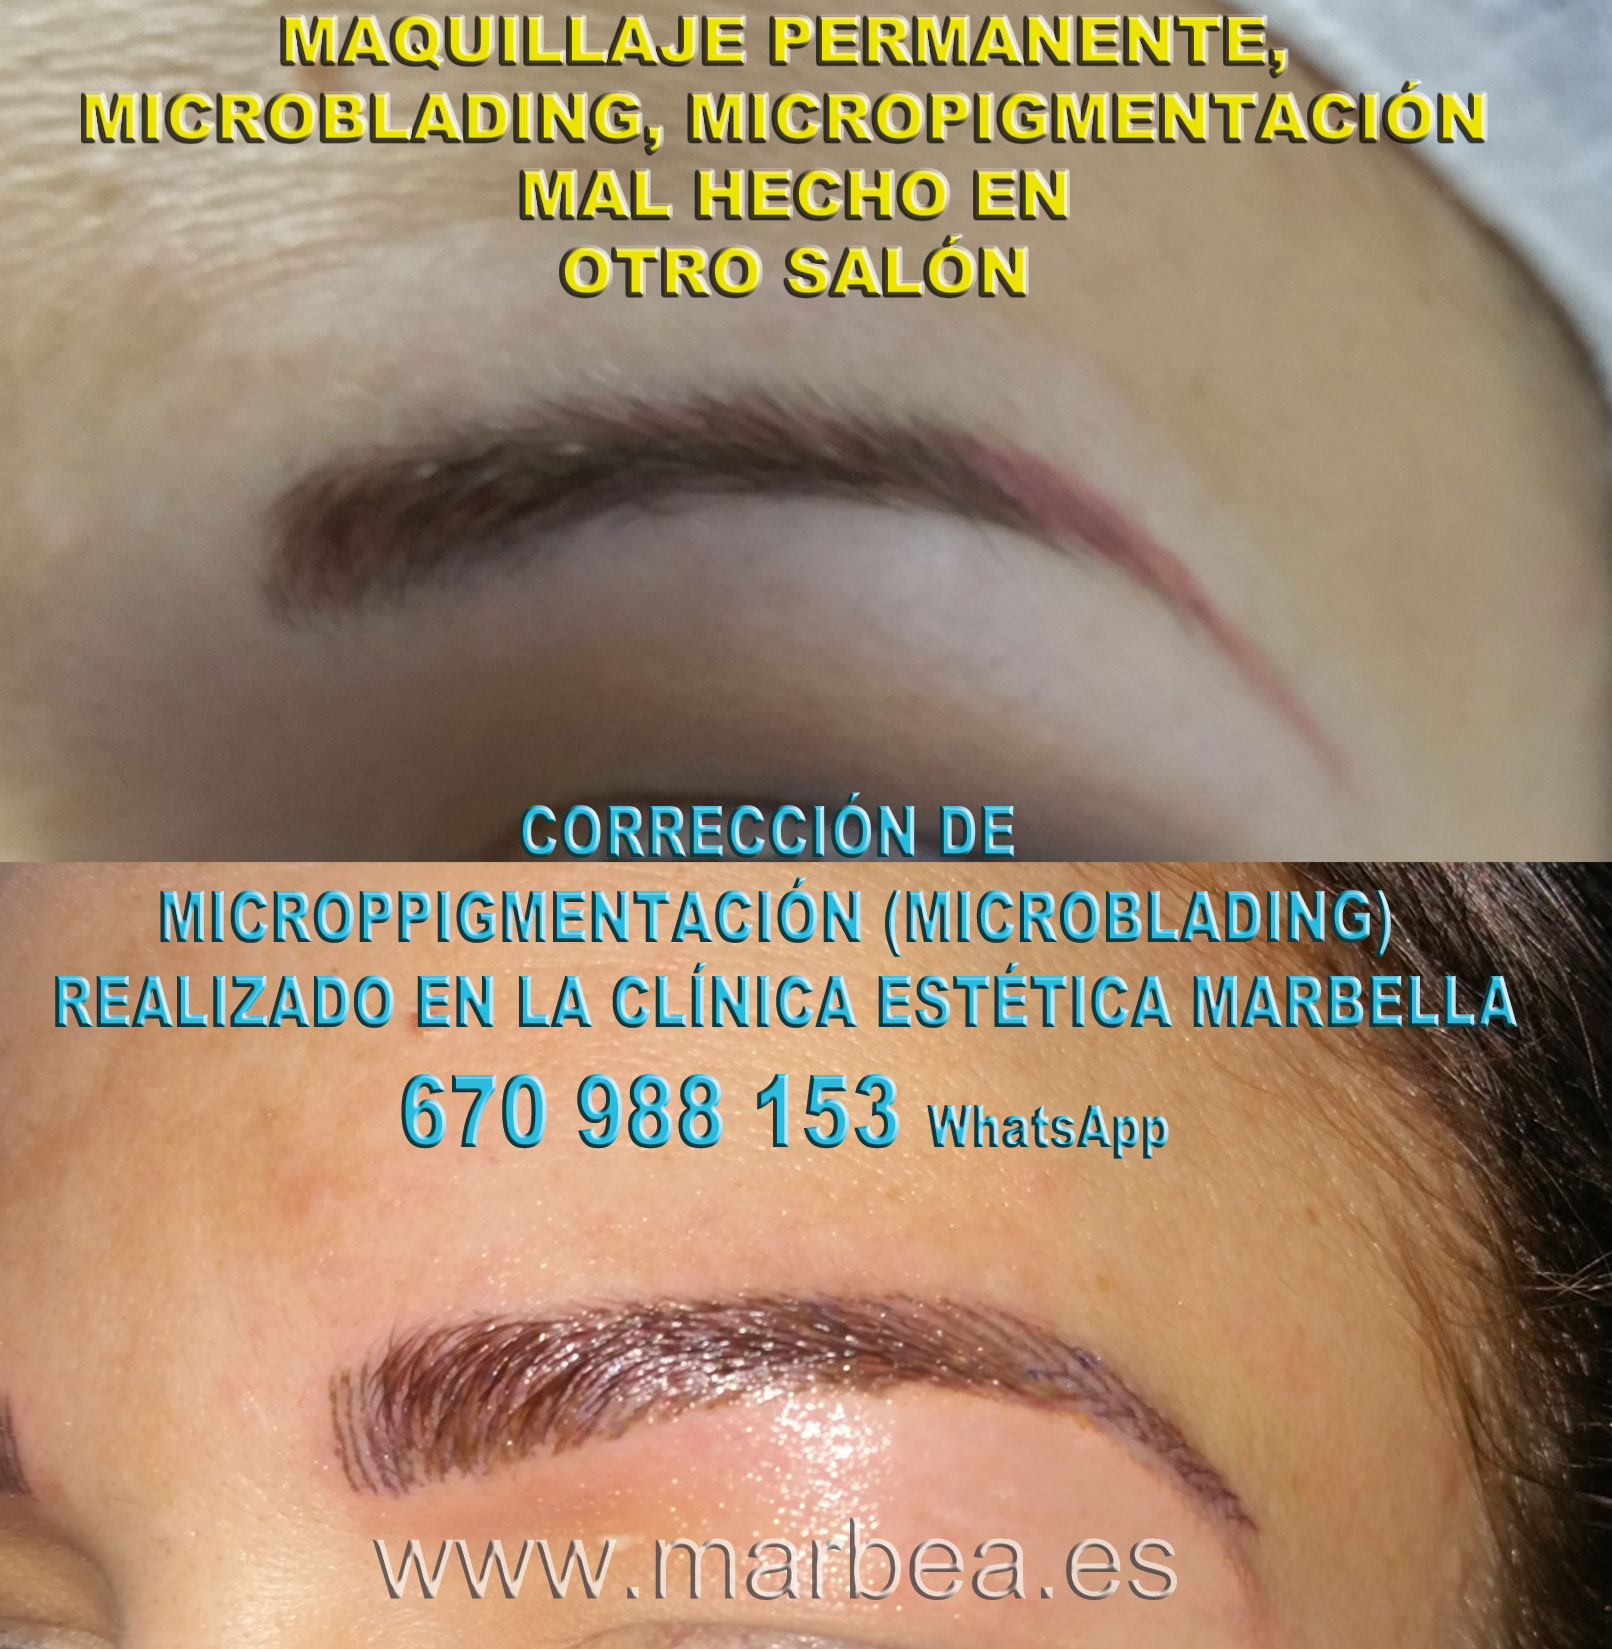 Borrar maquillaje permanente mal hecha clínica estética maquillaje semipermanente ofrenda corrección de micropigmentación en cejas,reparamos microppigmentacion mal hechos